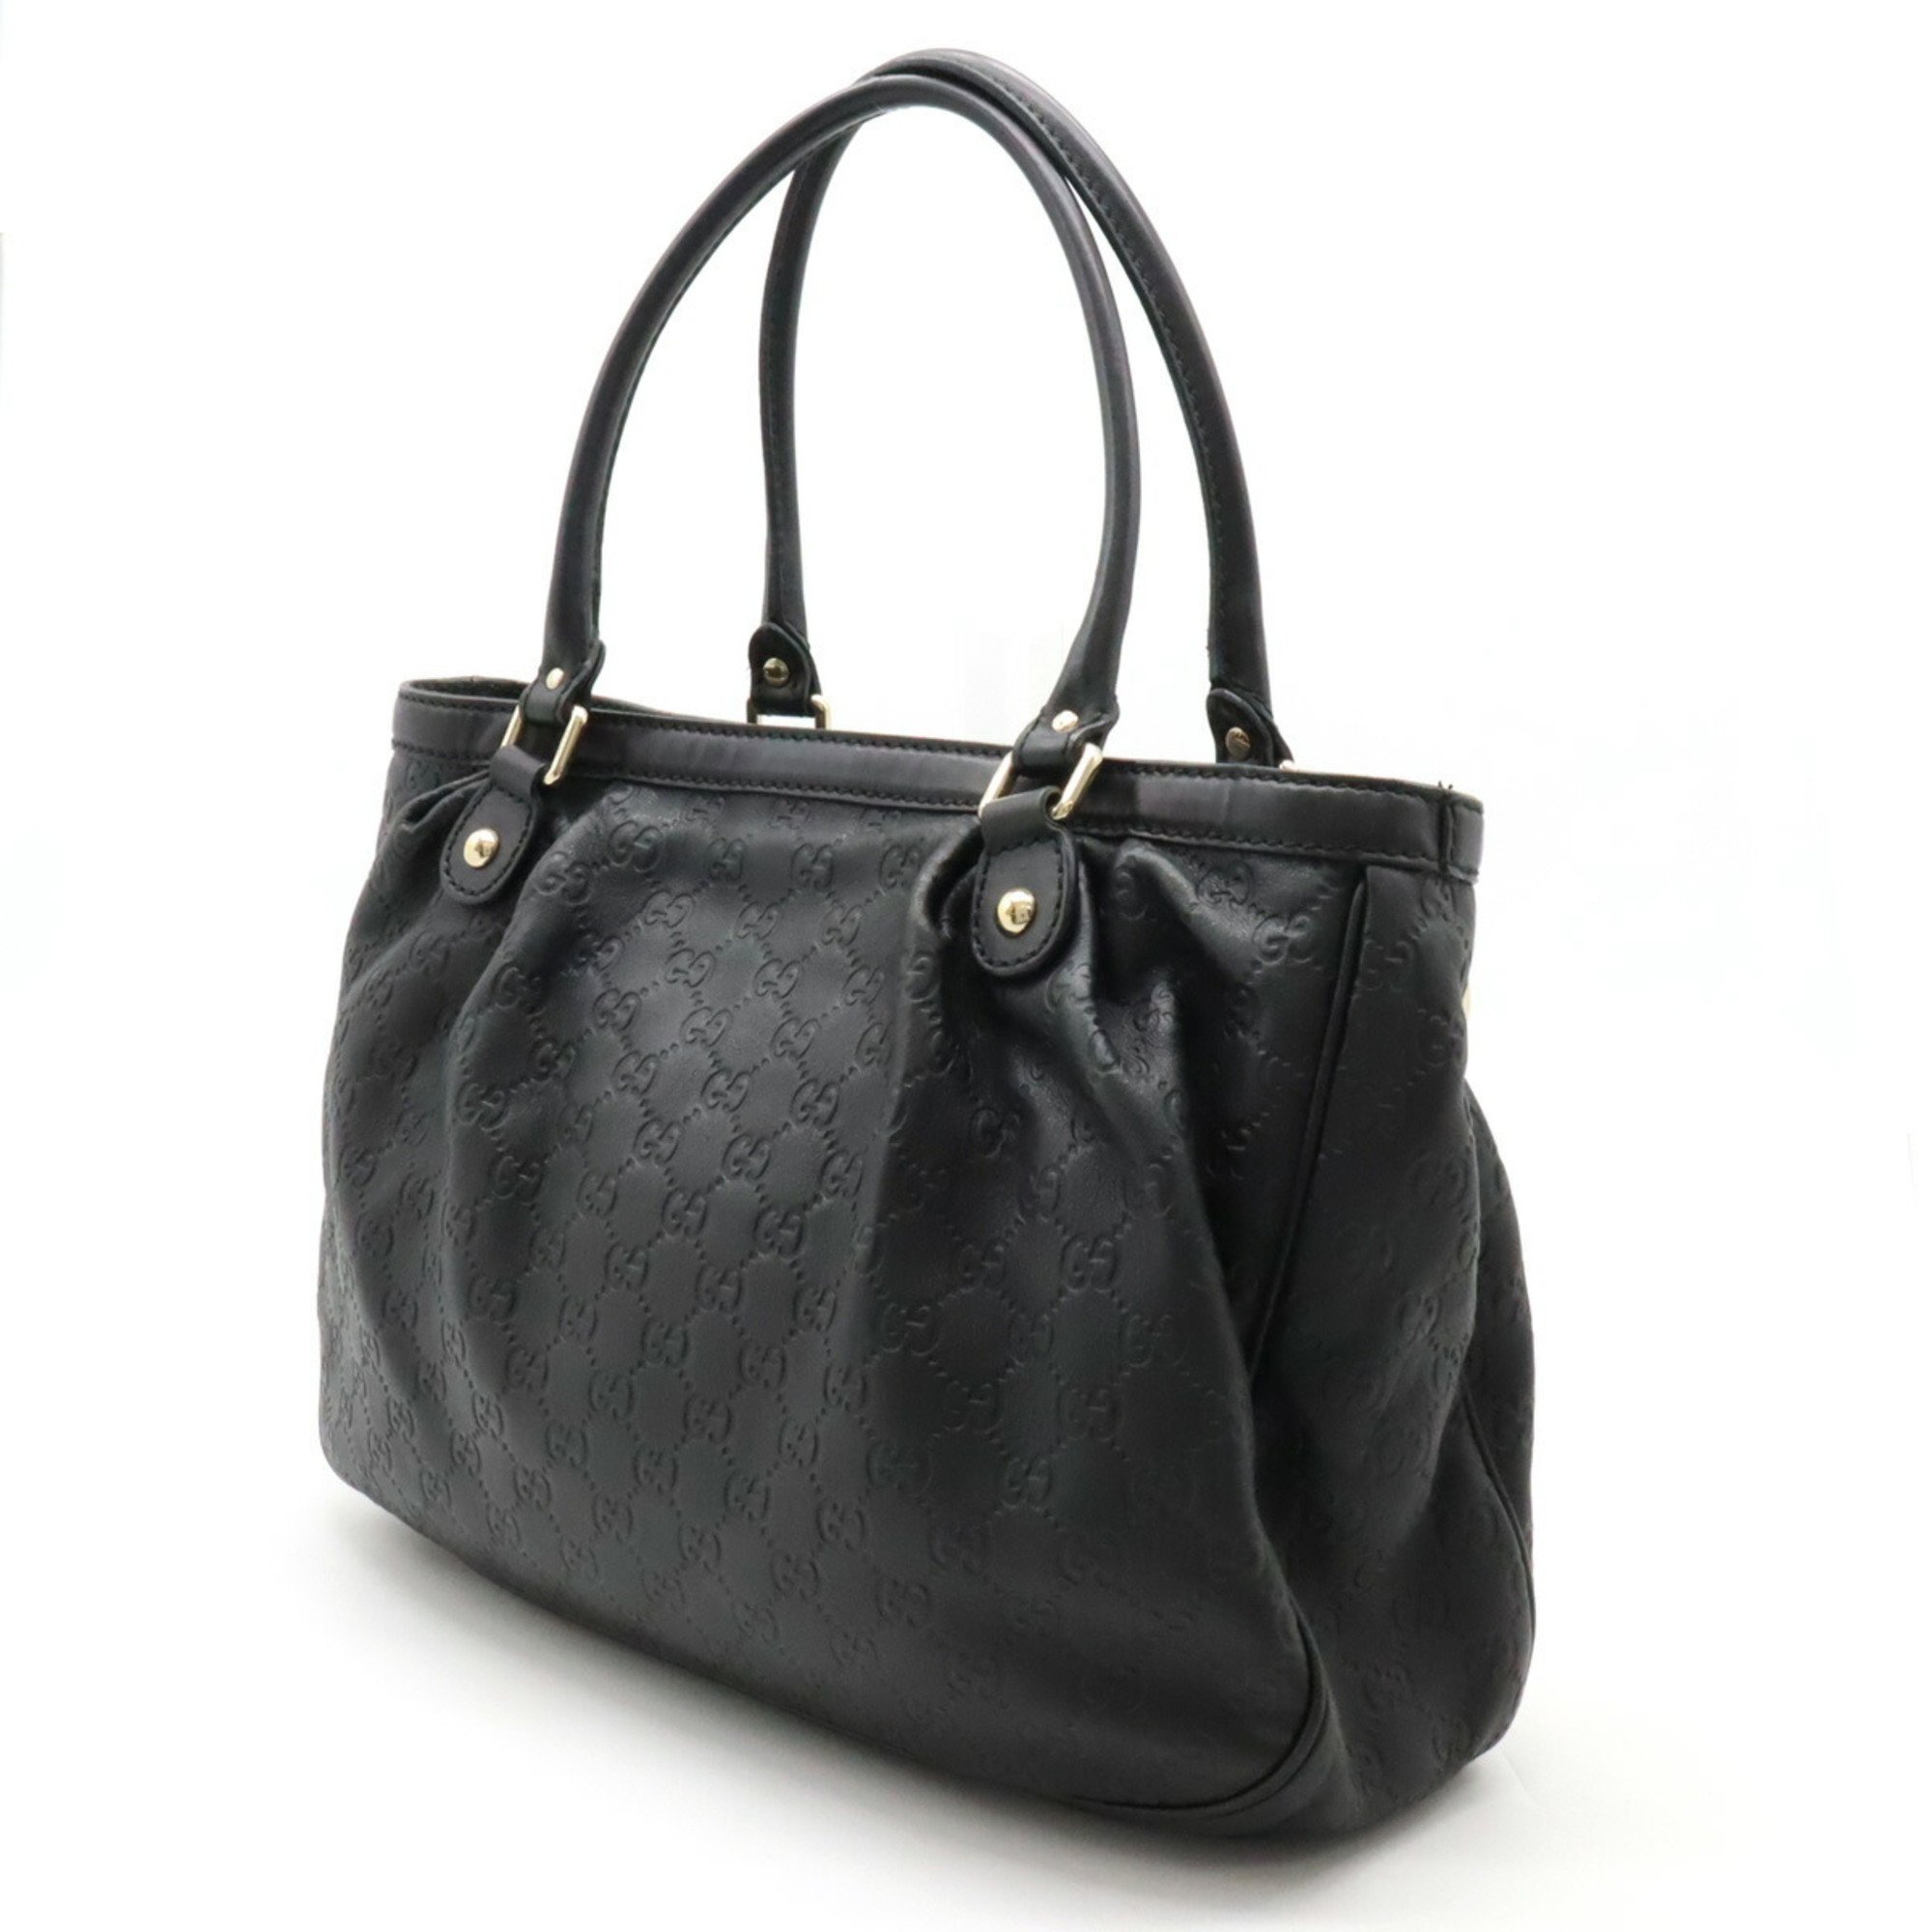 GUCCI Guccissima Sukey Tote Bag Shoulder Leather Black 296835